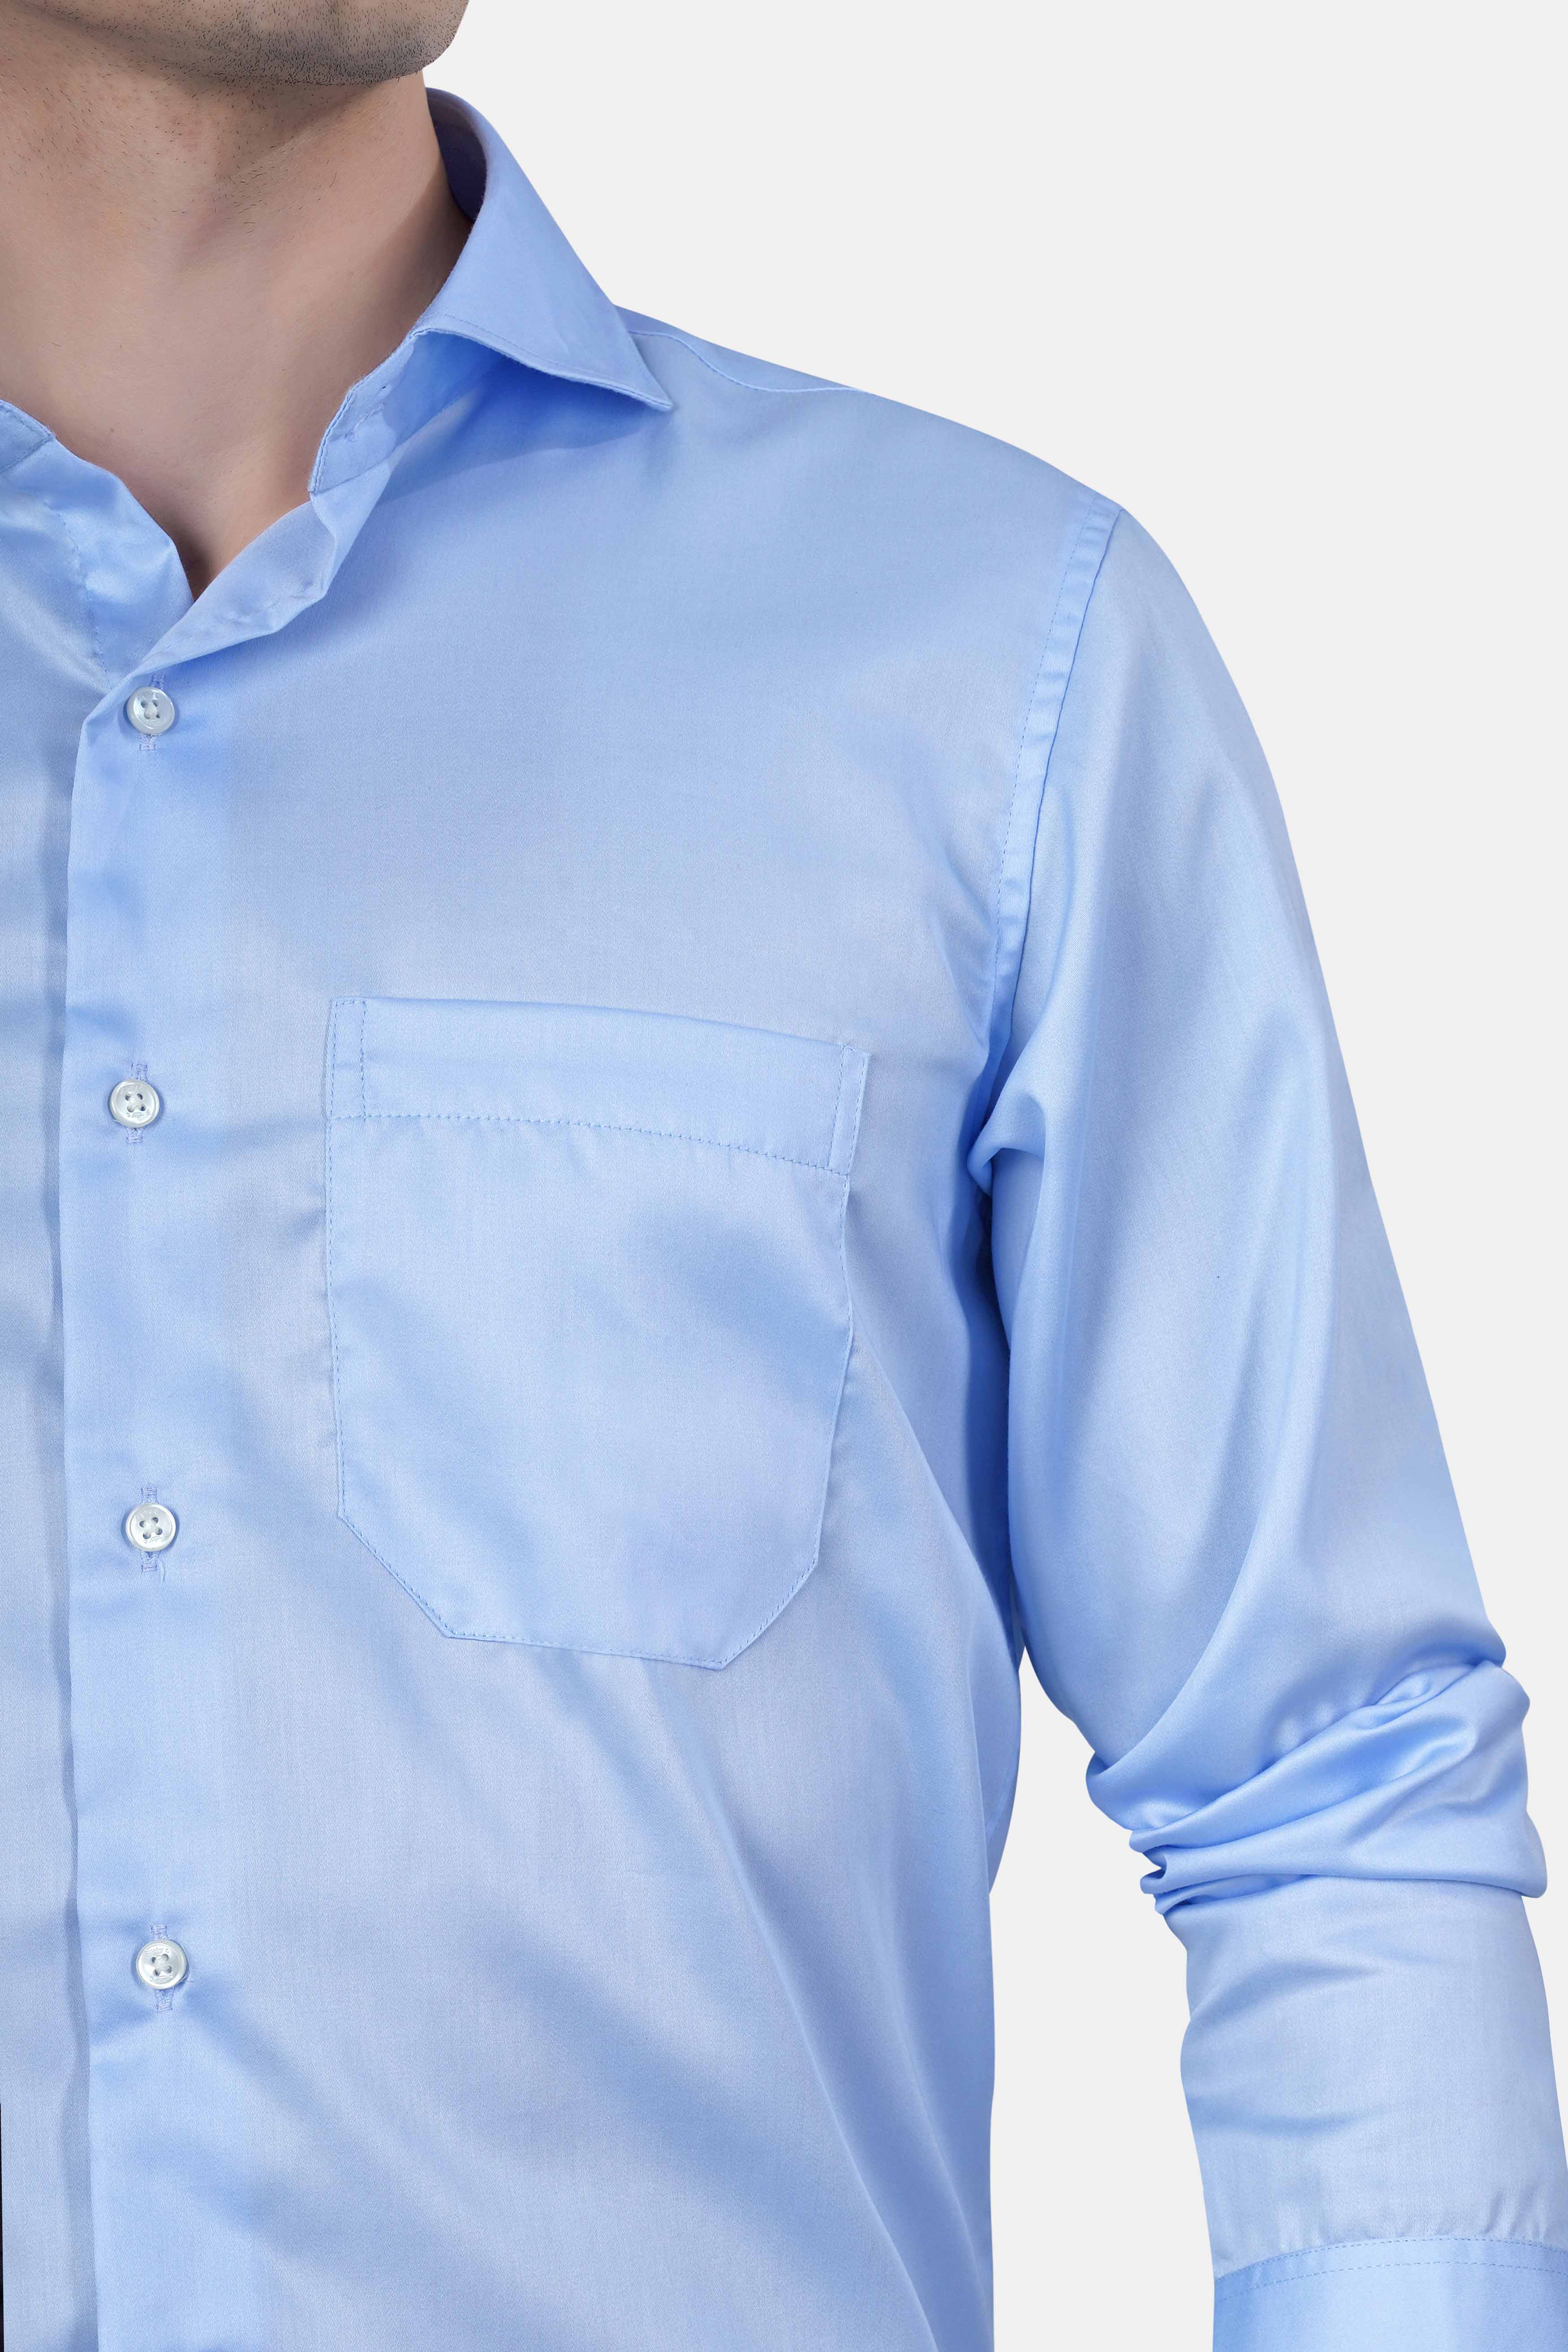 Spindle Blue Subtle Sheen Super Soft Premium Cotton Shirt